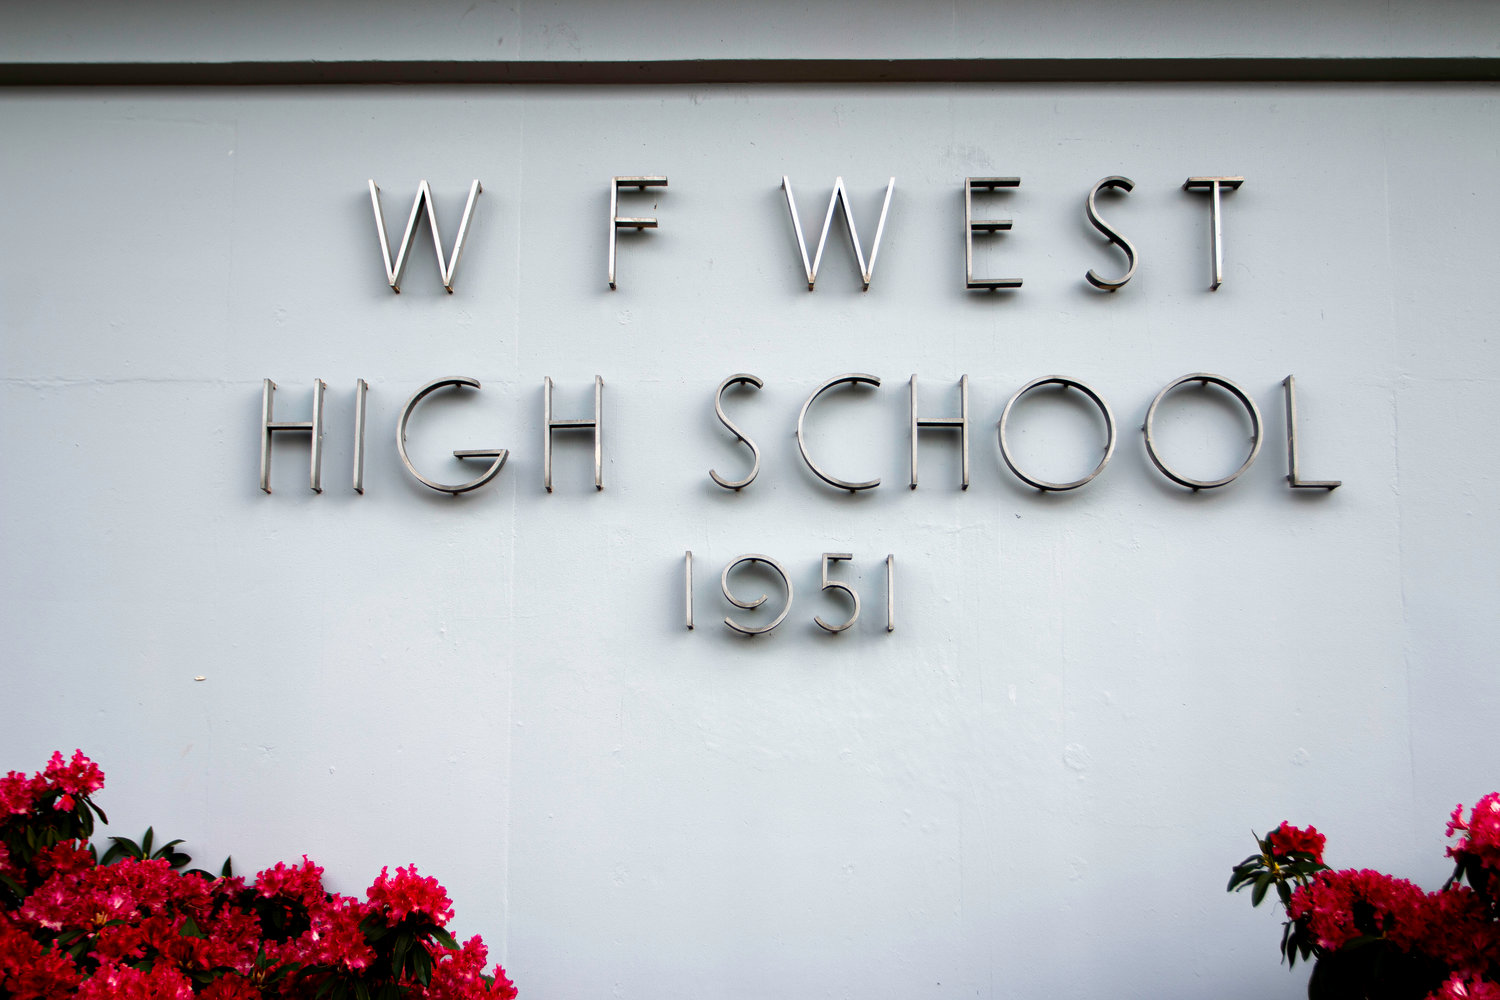 W.F. West High School